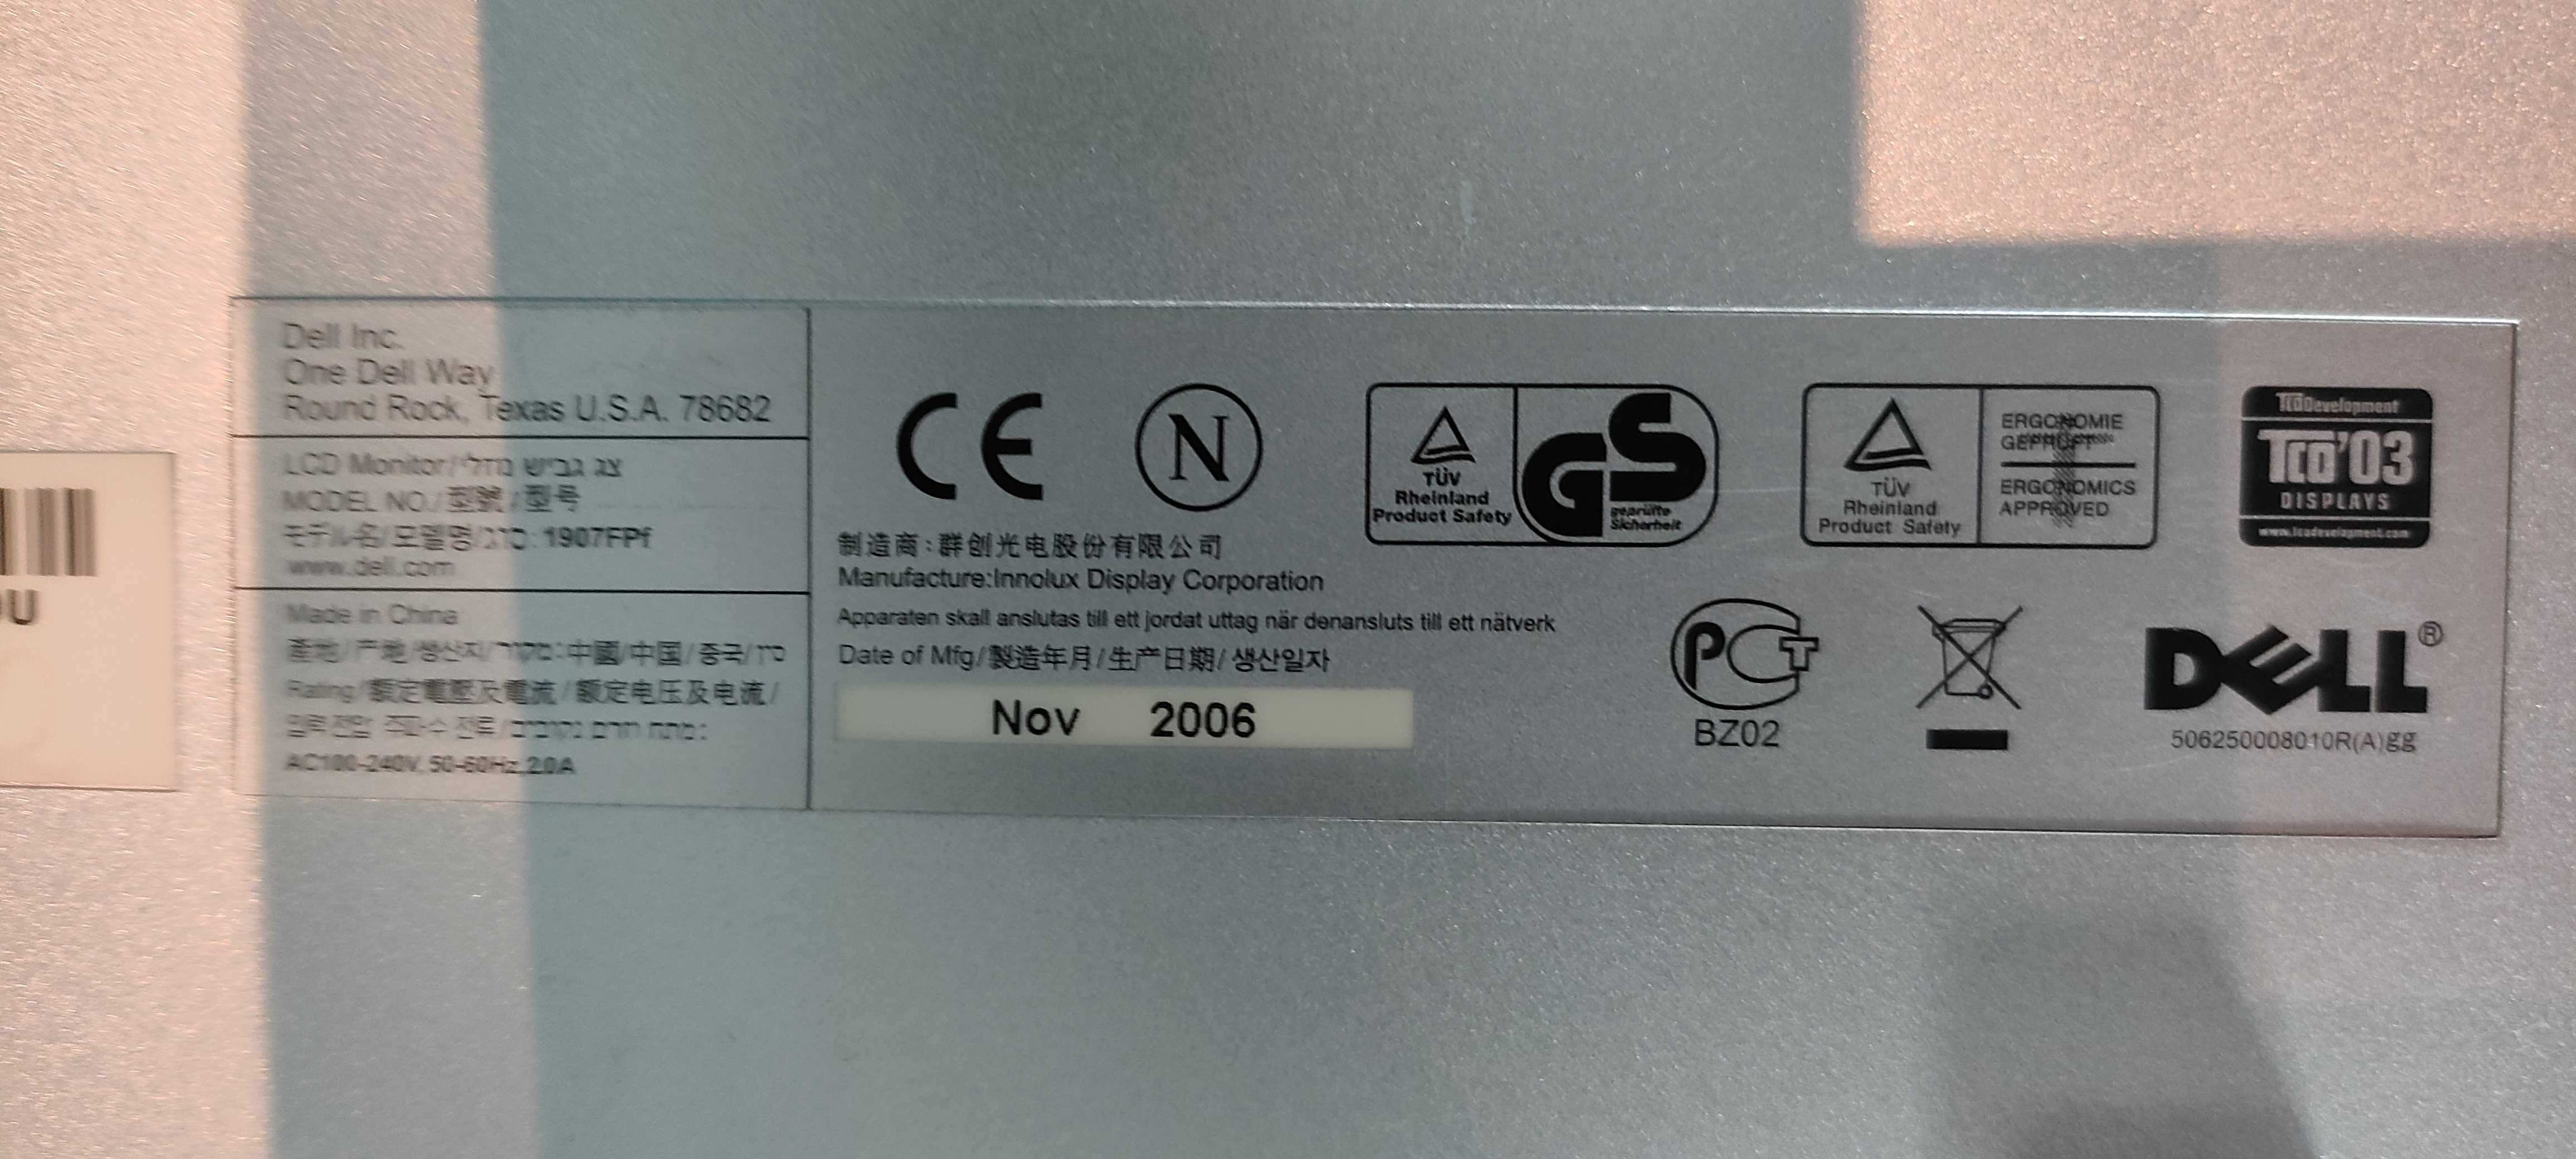 monitor LCD DELL 1907FPf 19" 5:4 100% sprawny, bez uszkodzeń